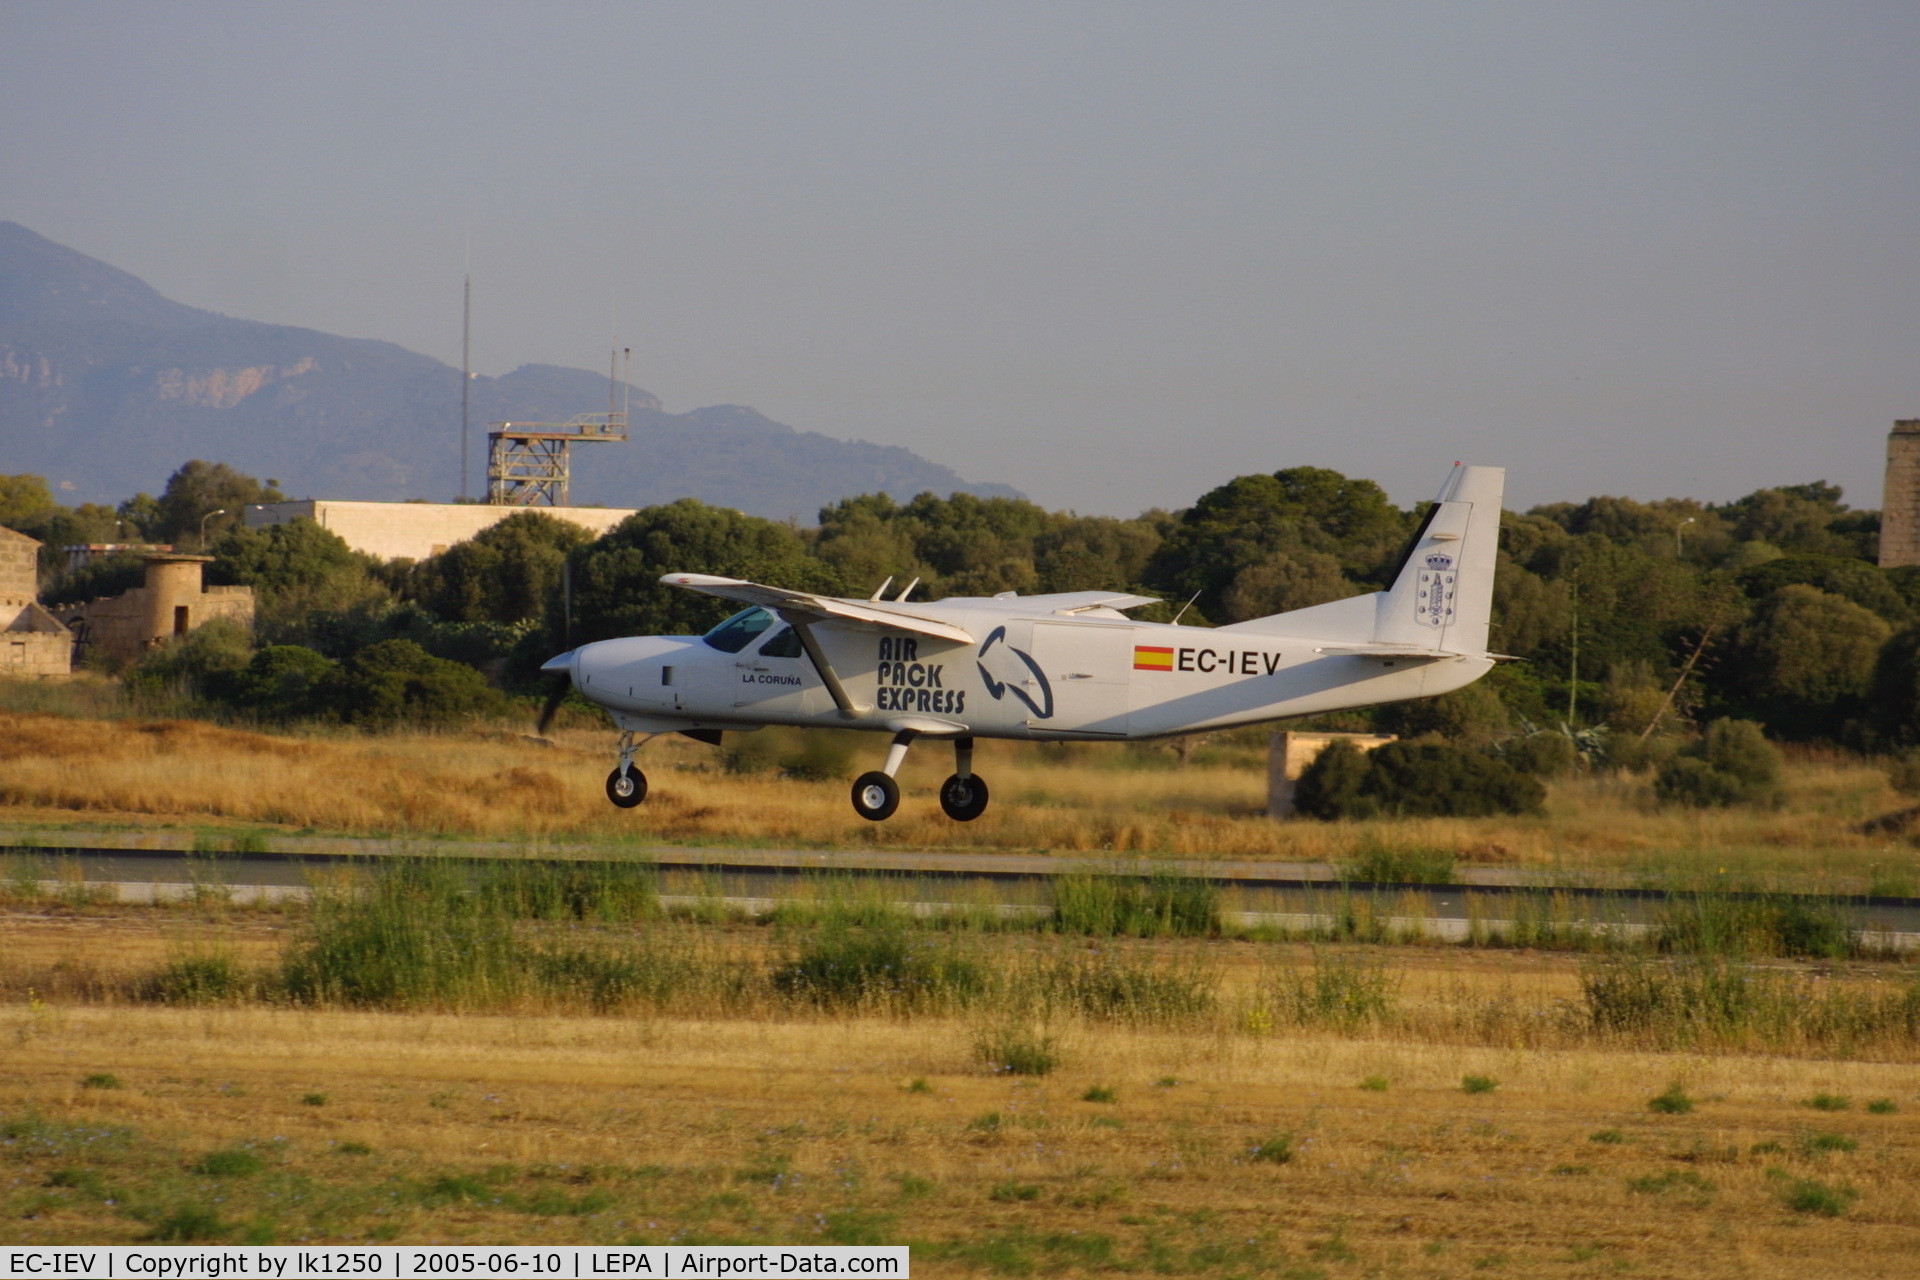 EC-IEV, 2002 Cessna 208B  Grand Caravan C/N 208B0936, This Cessna 208B EC-IEV flies for Air Pack Express end lands here at Palma in June 2005